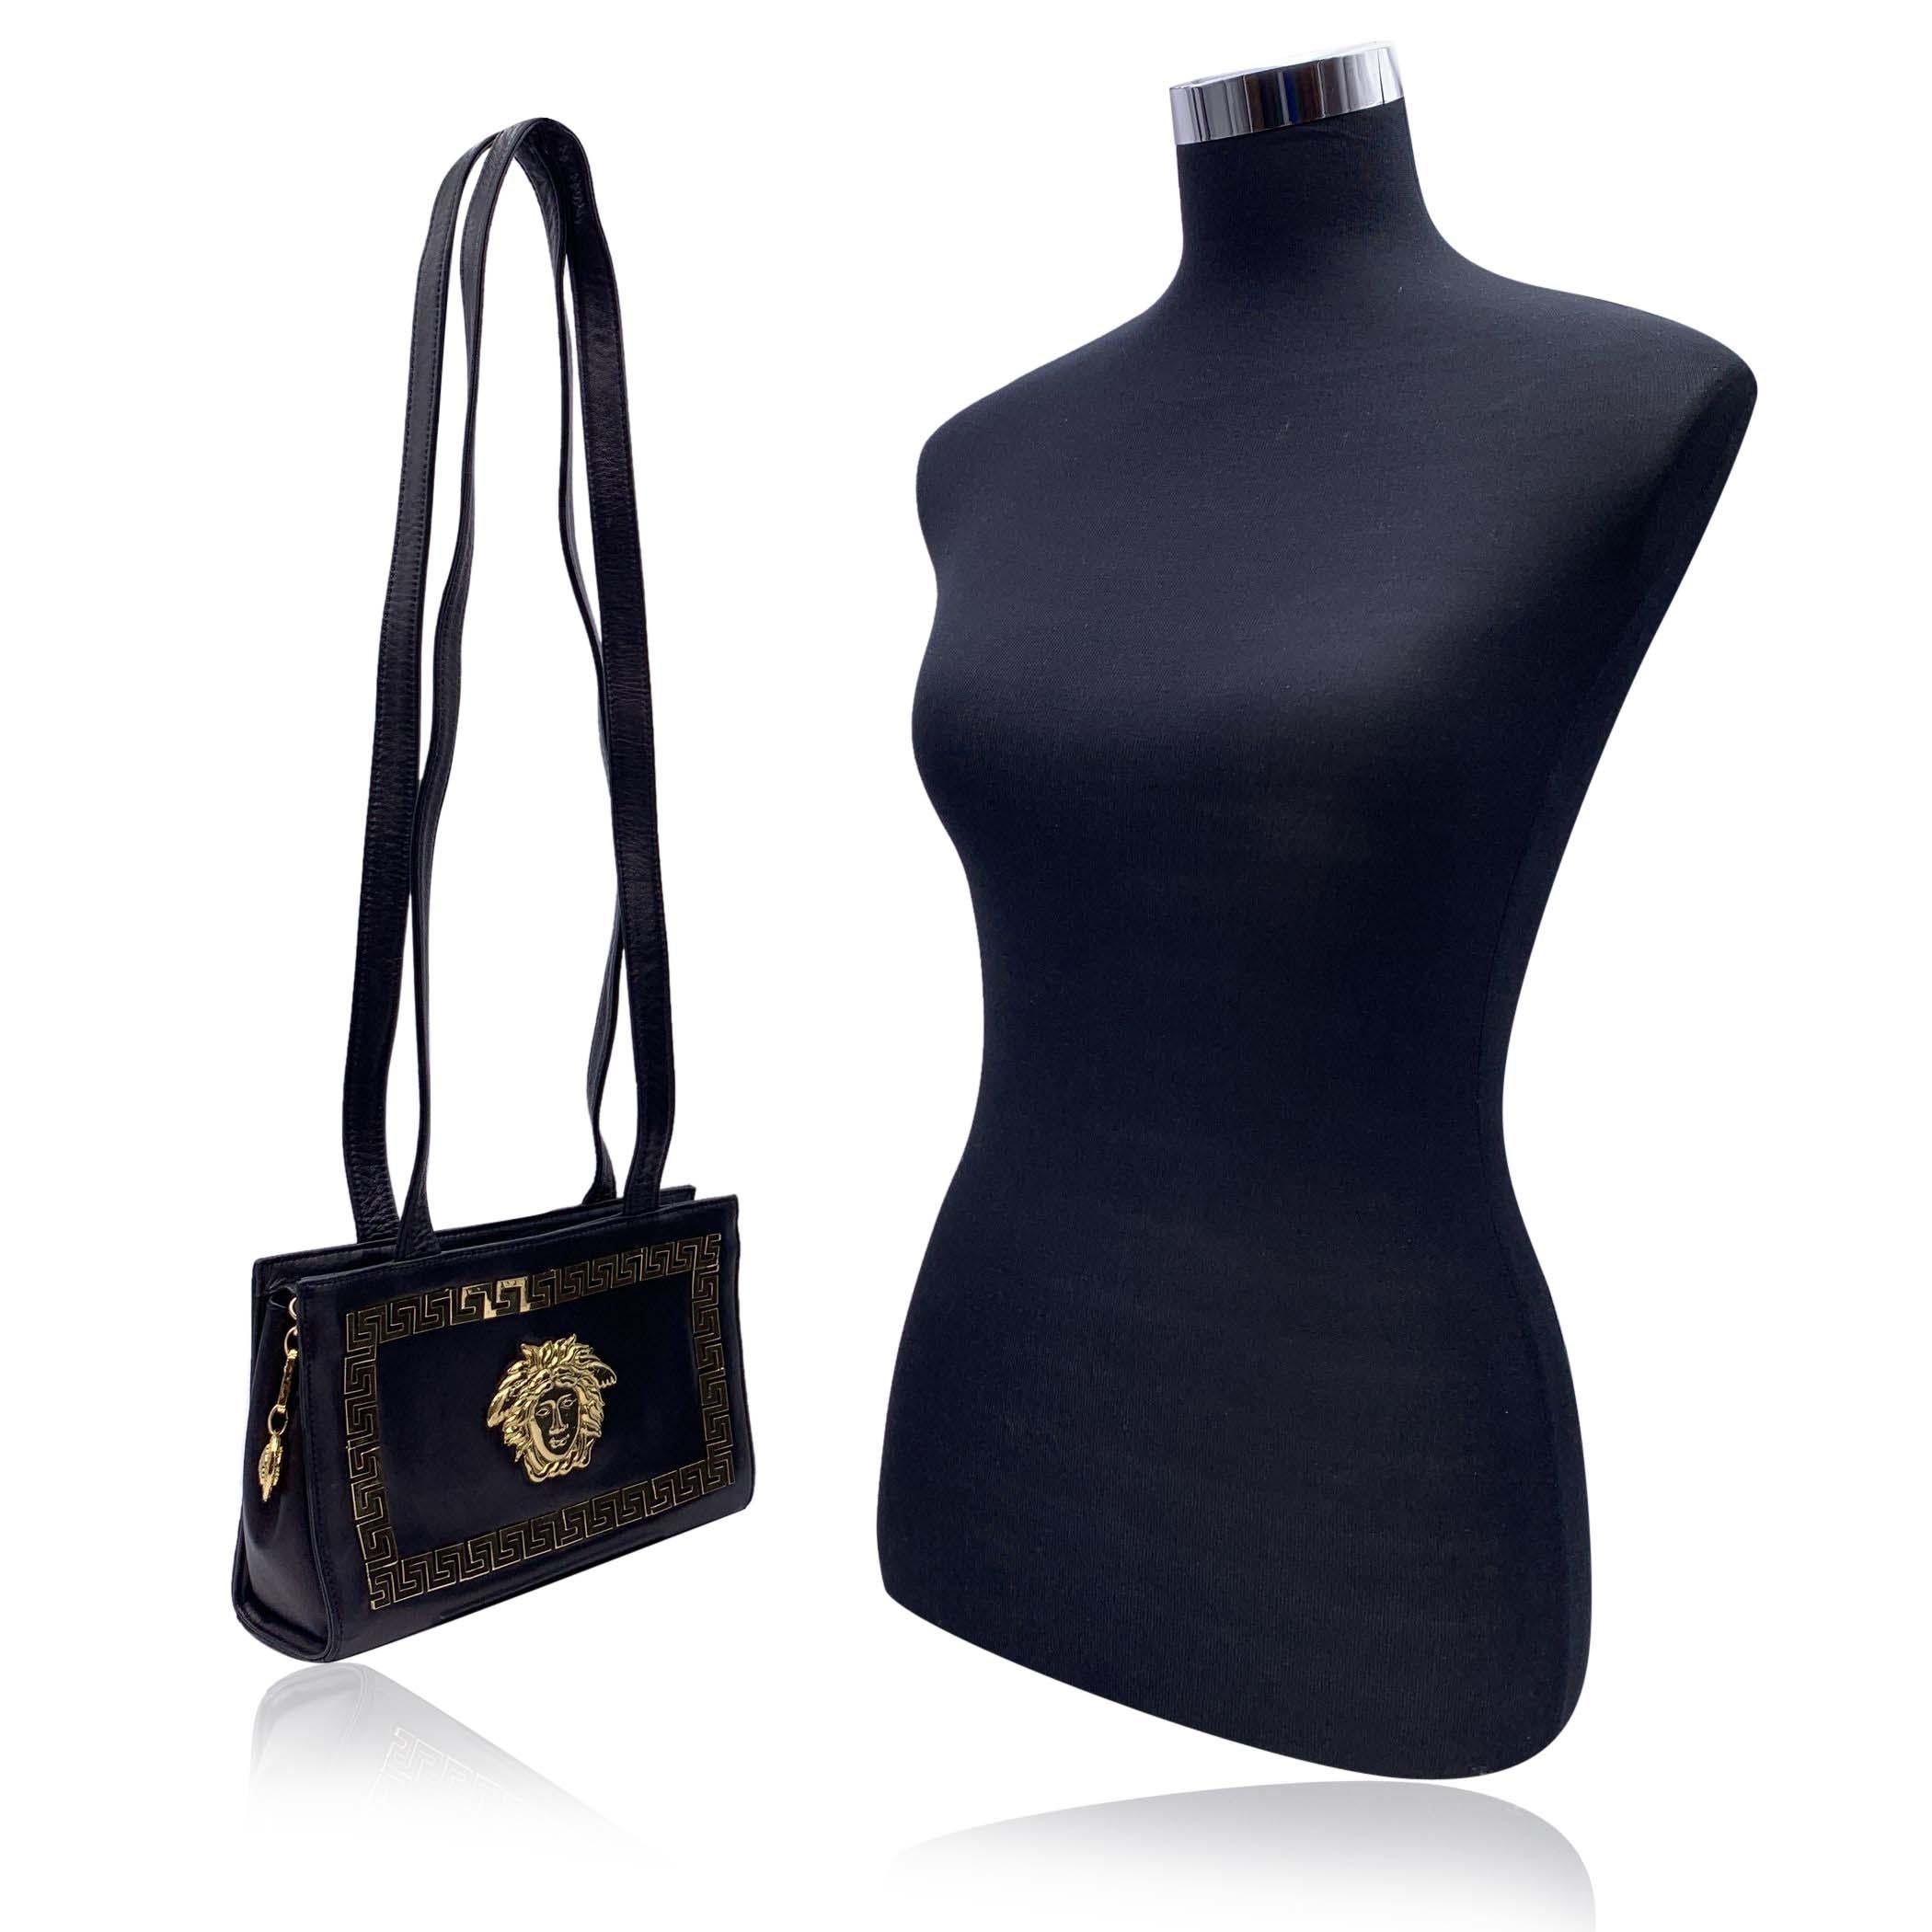 Magnifique sac à bandoulière vintage Gianni Versace Couture des années 1990. Réalisé en cuir noir, il est orné d'un grand logo Medusa en métal doré sur le devant et de bordures en forme de clé grecque. Longues bretelles. Fermeture à glissière sur le